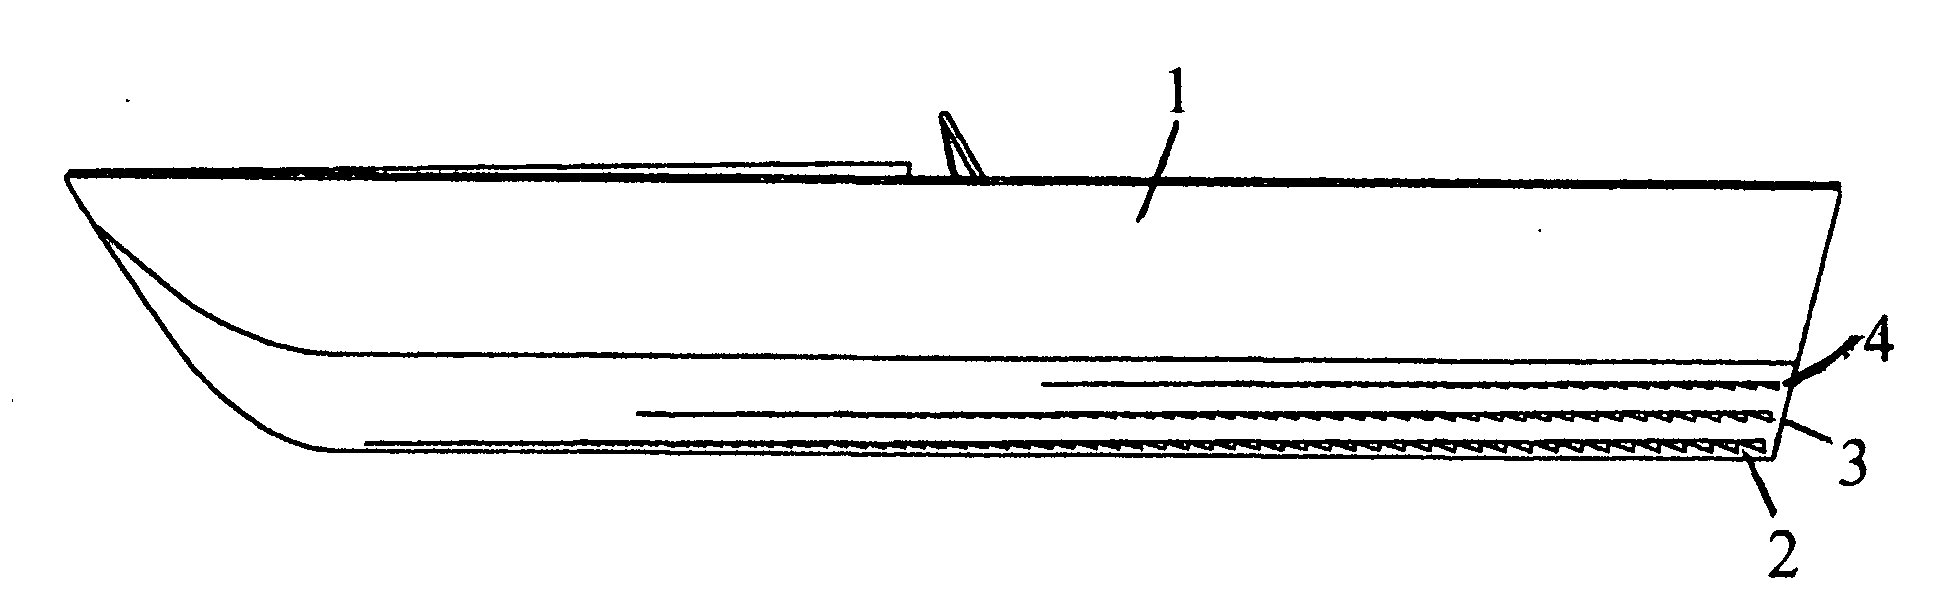 Boat hull strake design